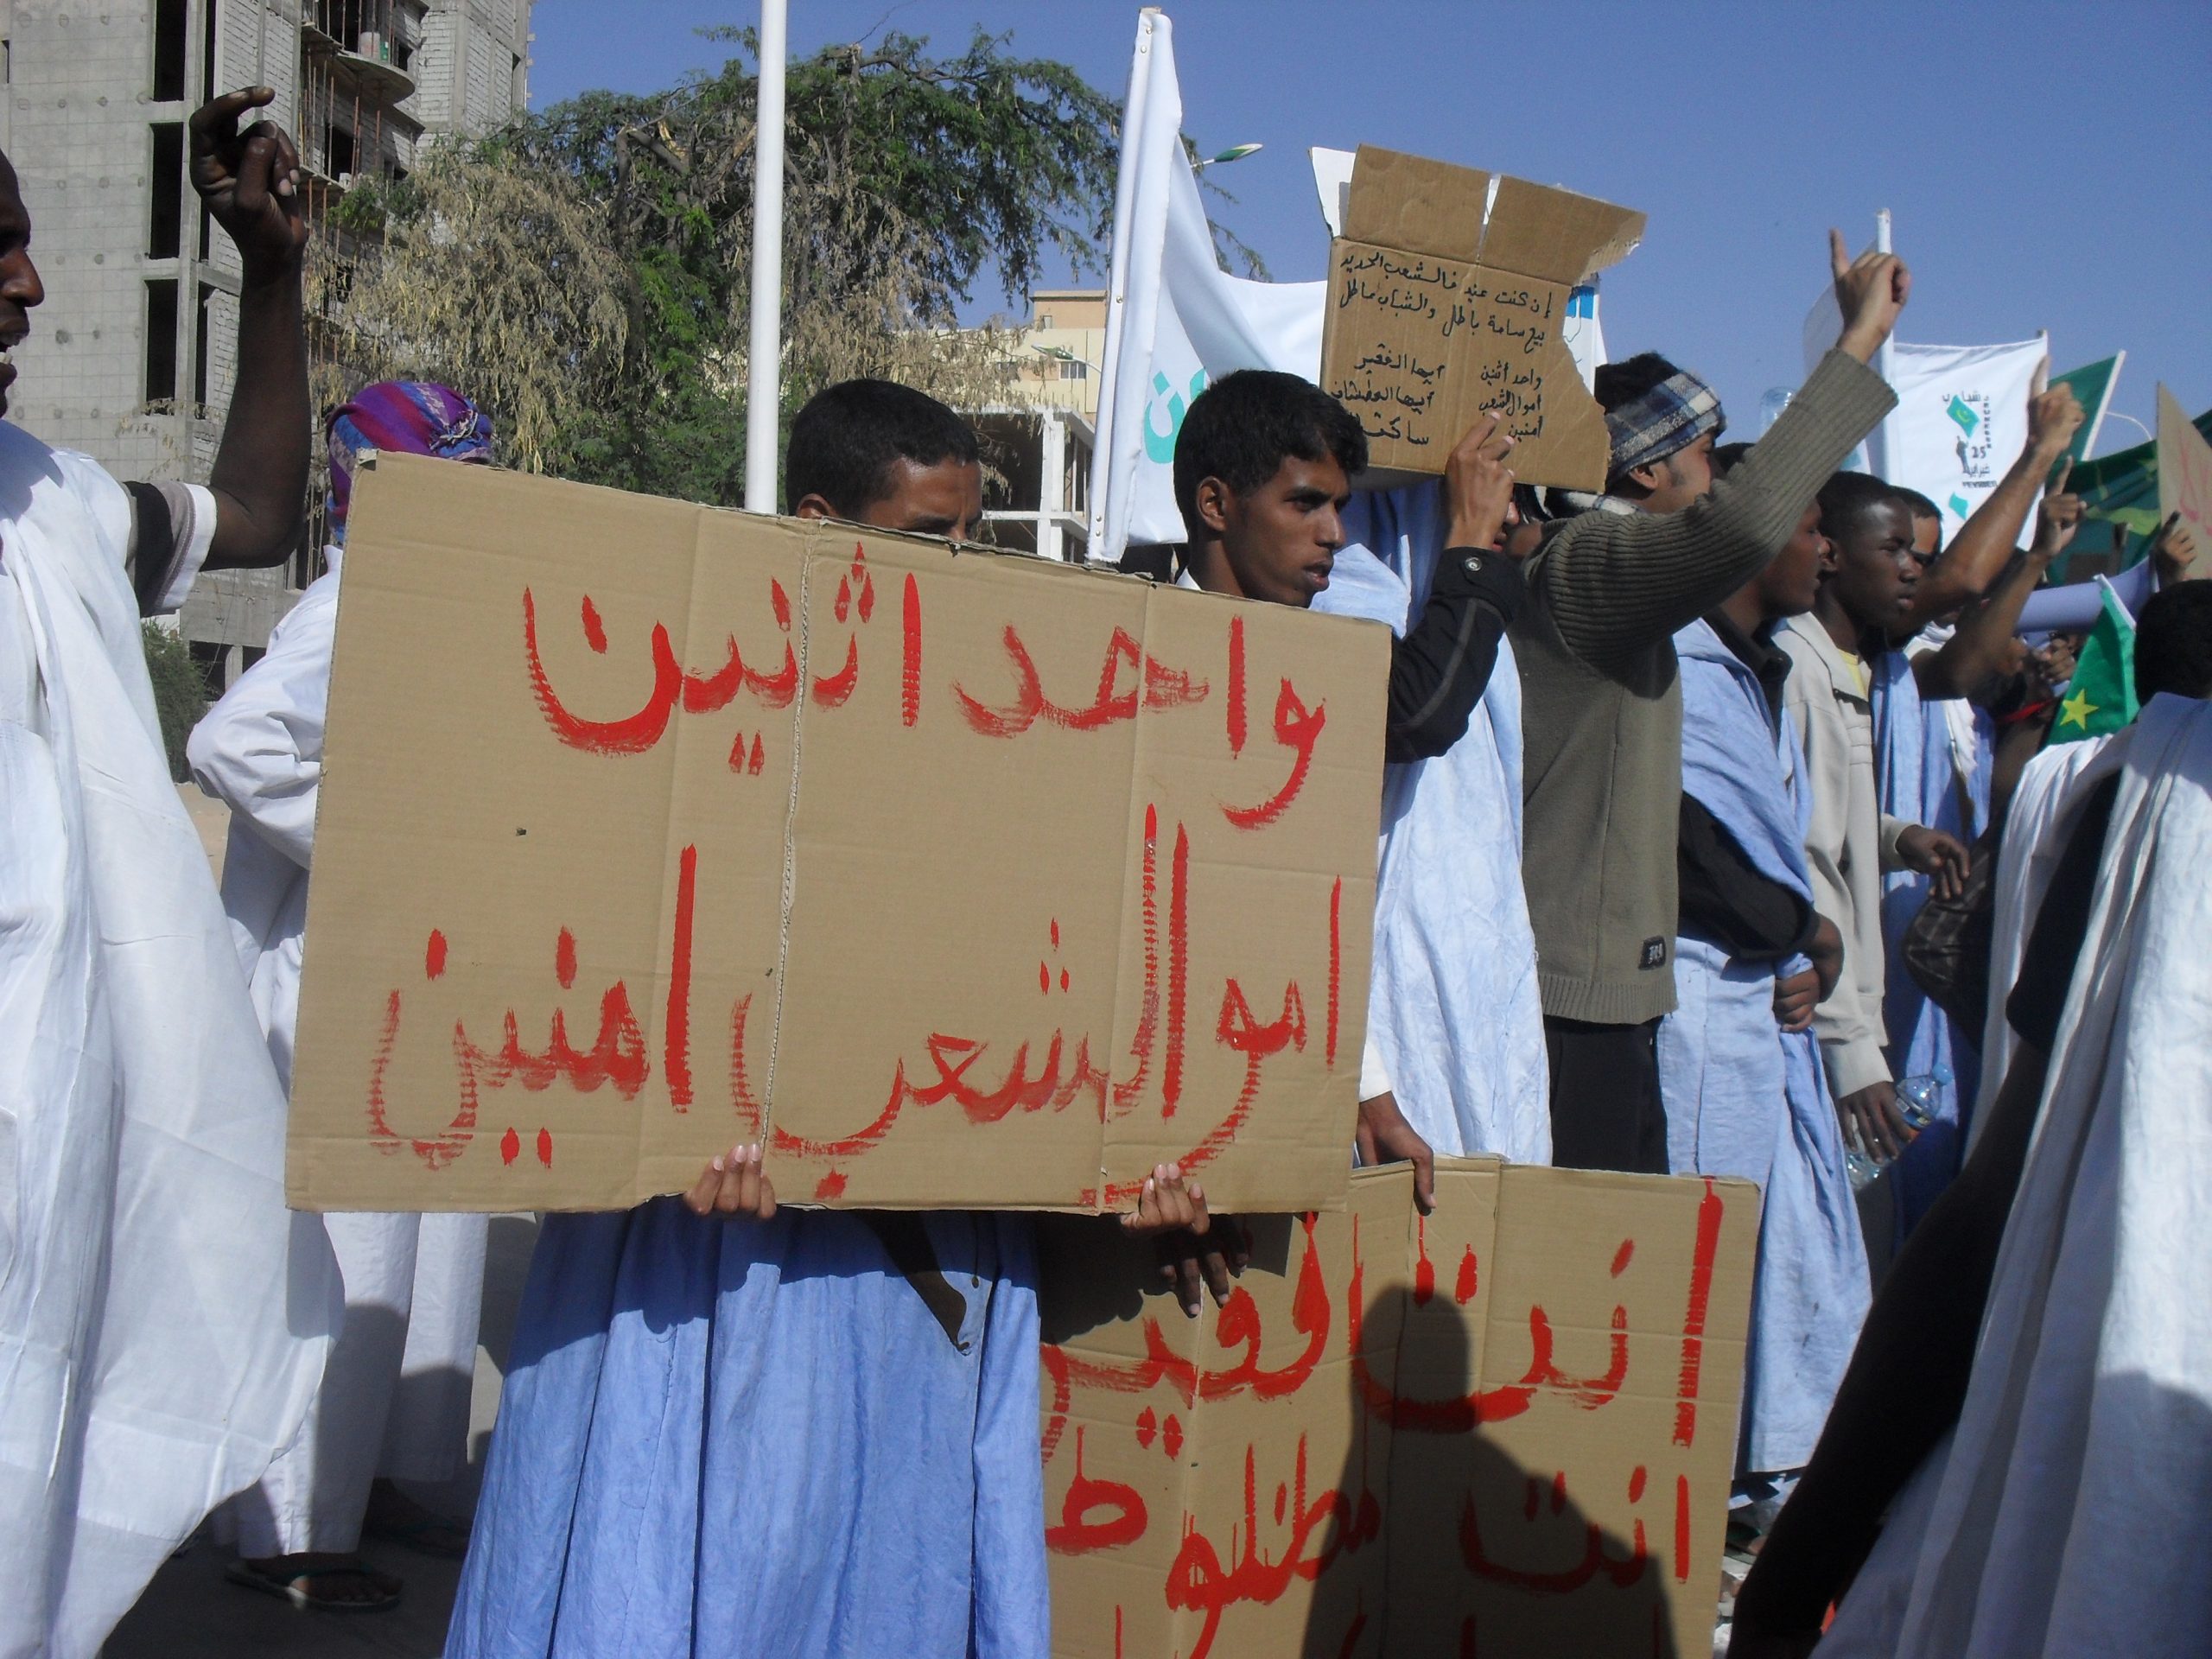 Mennesker demonstrerer med plakater med arabisk skrift